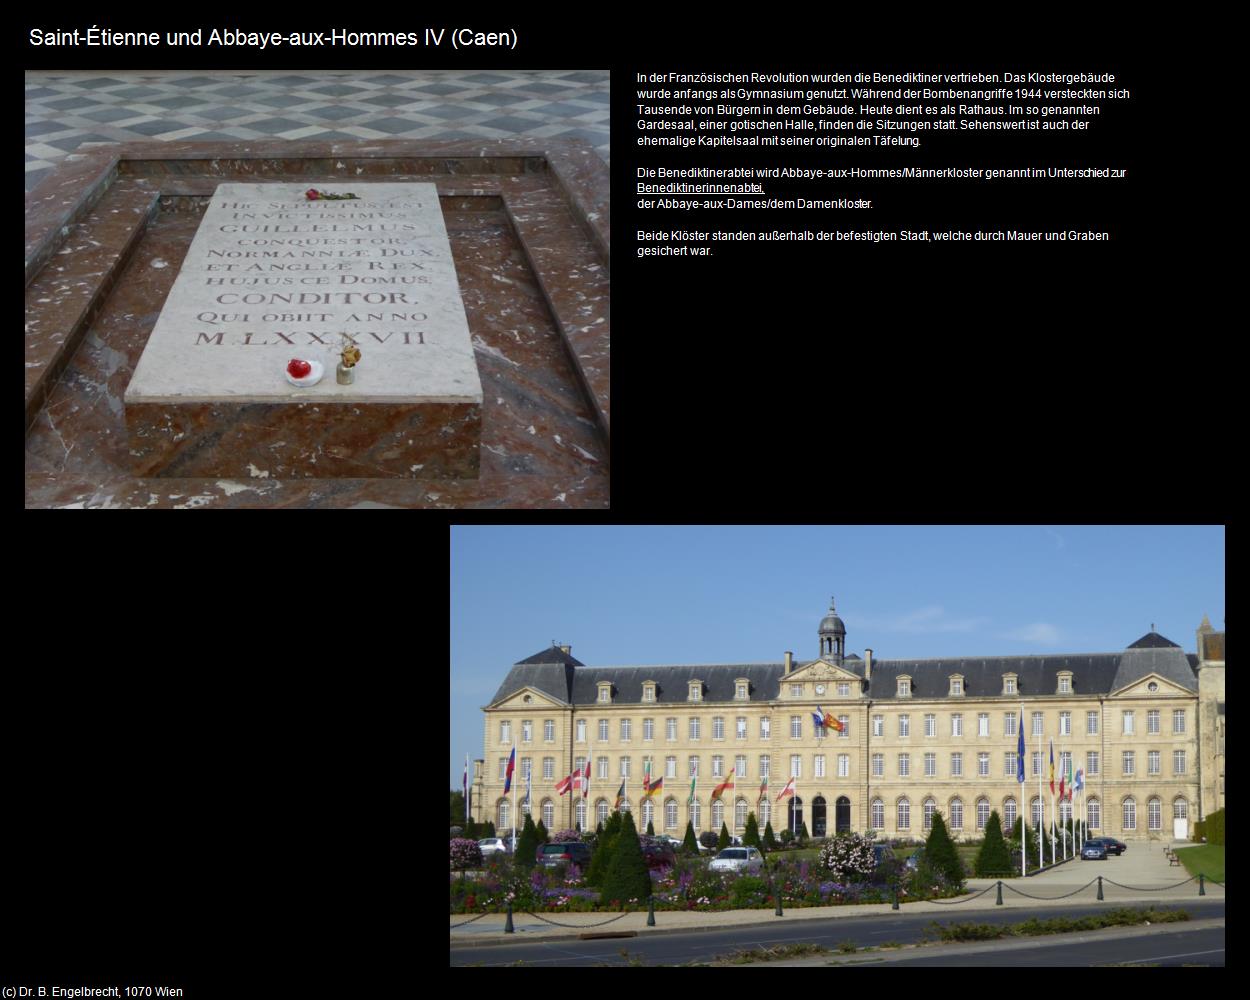 Saint-Etienne und Abbaye-aux-Hommes IV (Caen (FR-NOR)) in Kulturatlas-FRANKREICH(c)B.Engelbrecht